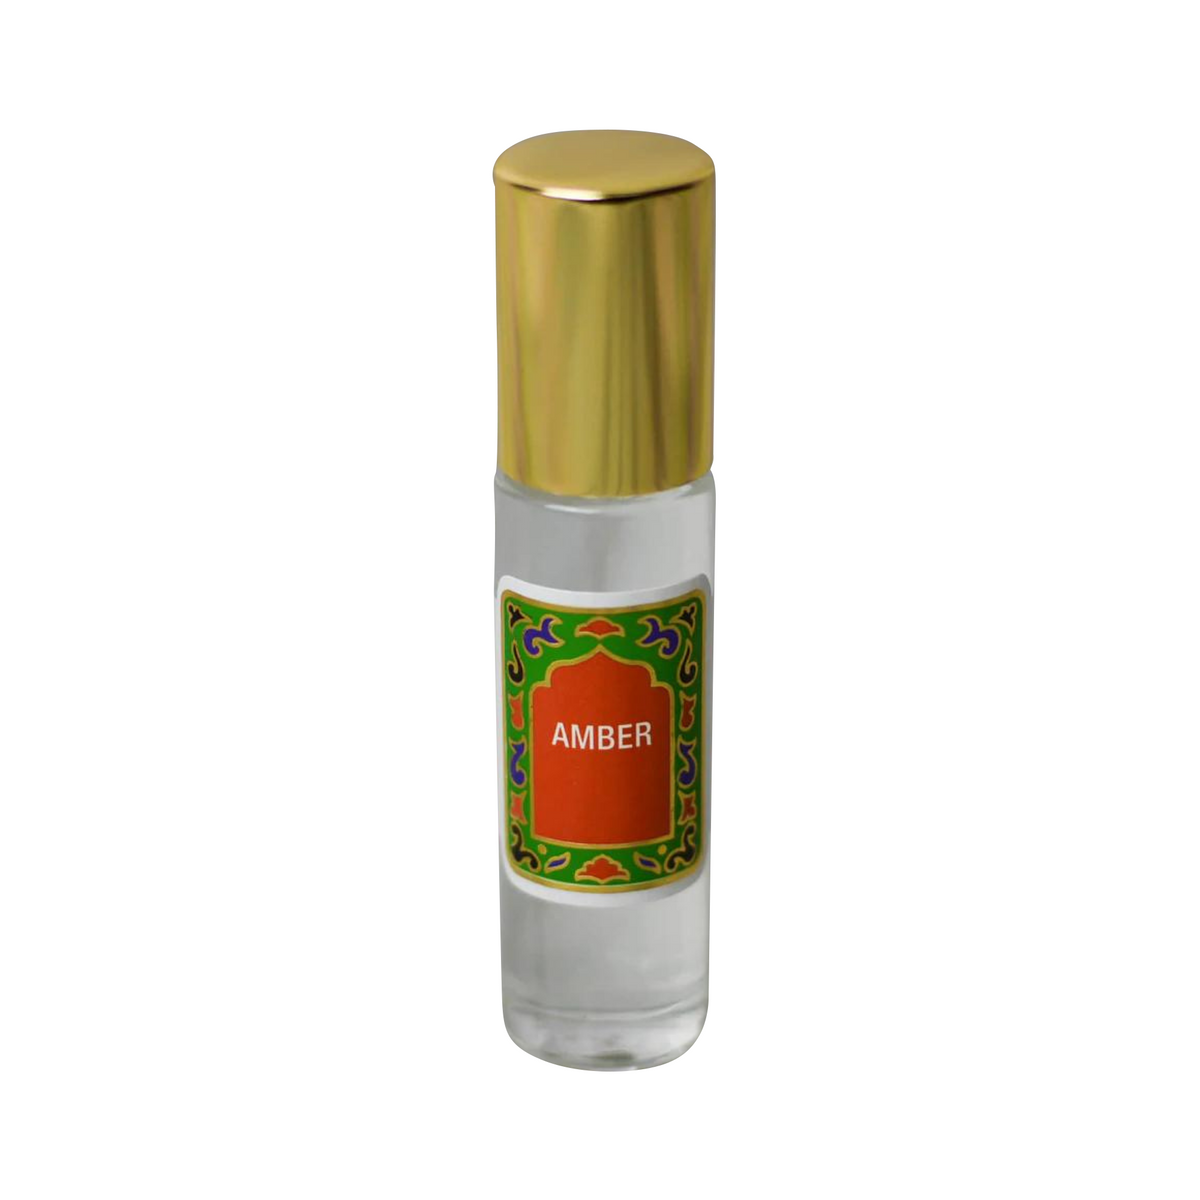 Amber Fragrance Oil Nemat International perfume - a fragrance for